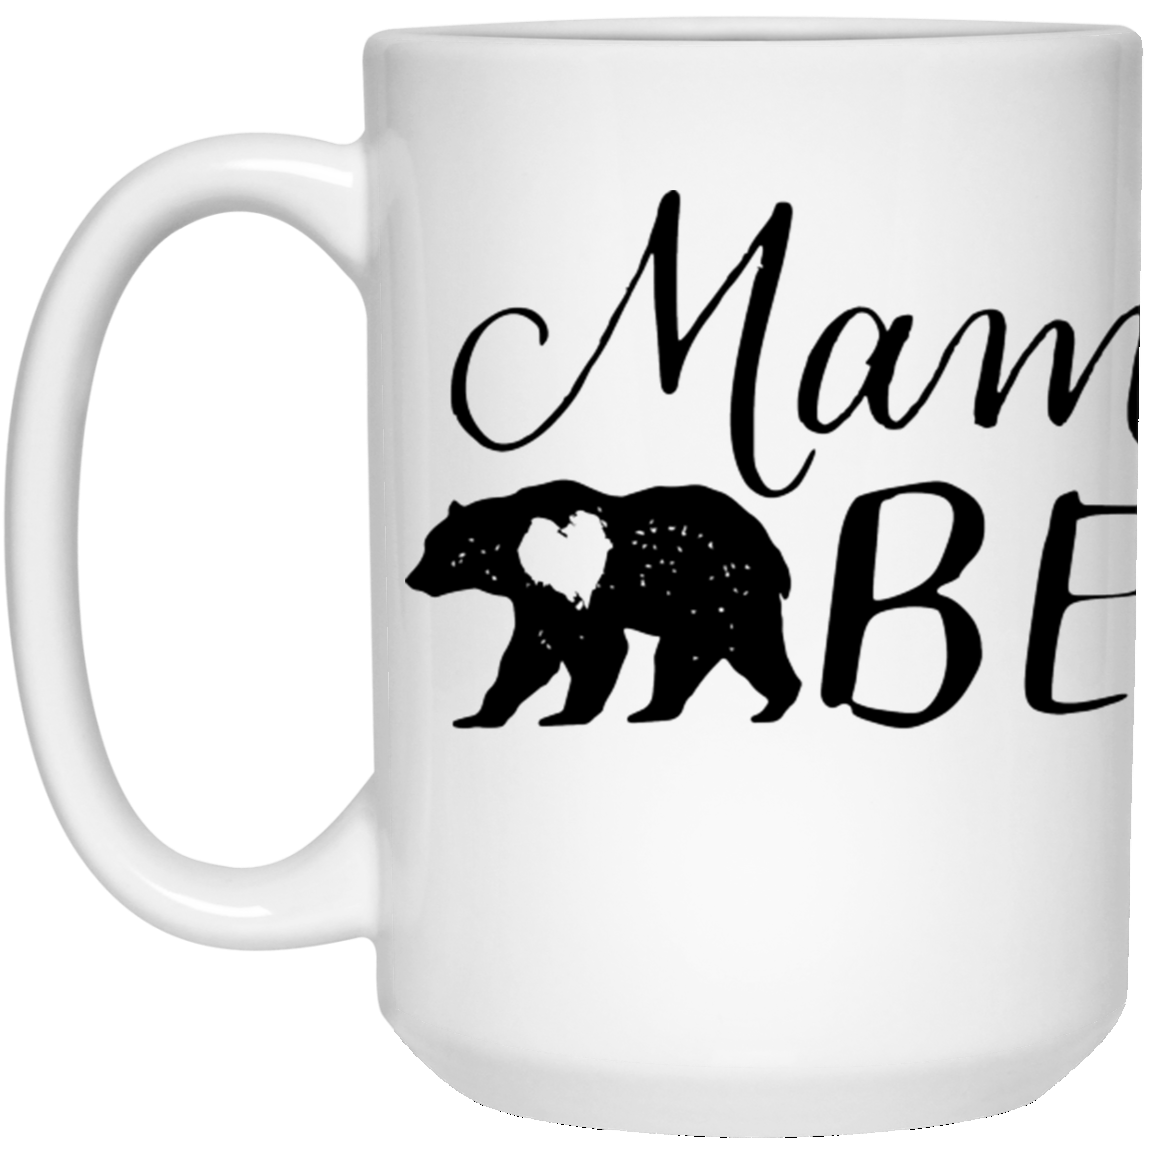 Mama Bear Mug ~ 15oz.